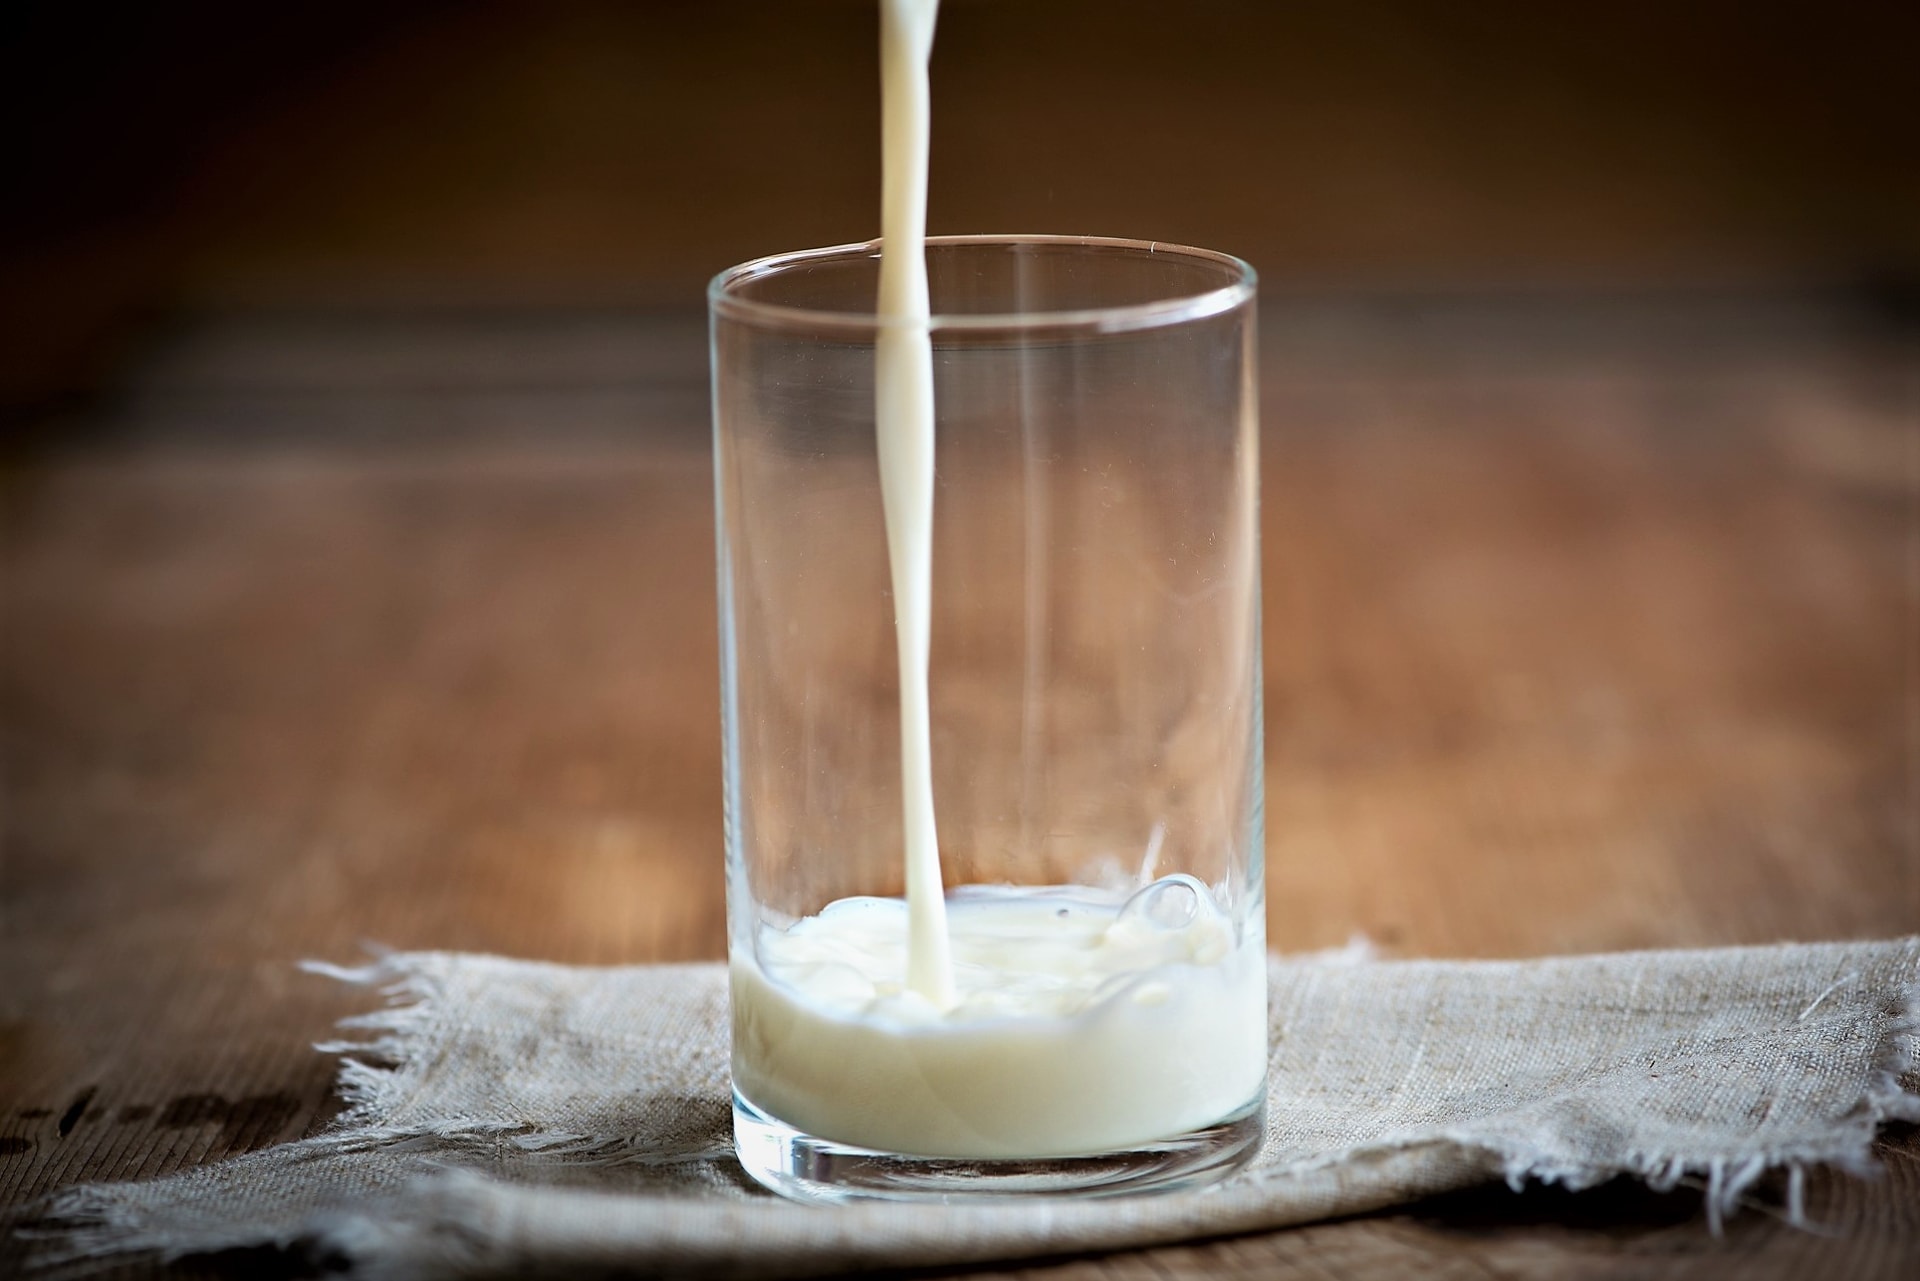 Mléko je tradičním zdrojem kvalitních bílkovin a kyseliny mléčné, především je doslova vitaminovou bombou – obsahuje totiž vitaminy A, D, E, K a vitamíny skupiny B a z minerálních látek mj. vápník, hořčík, sodík, draslík, fosfor, chlor, železo a jód